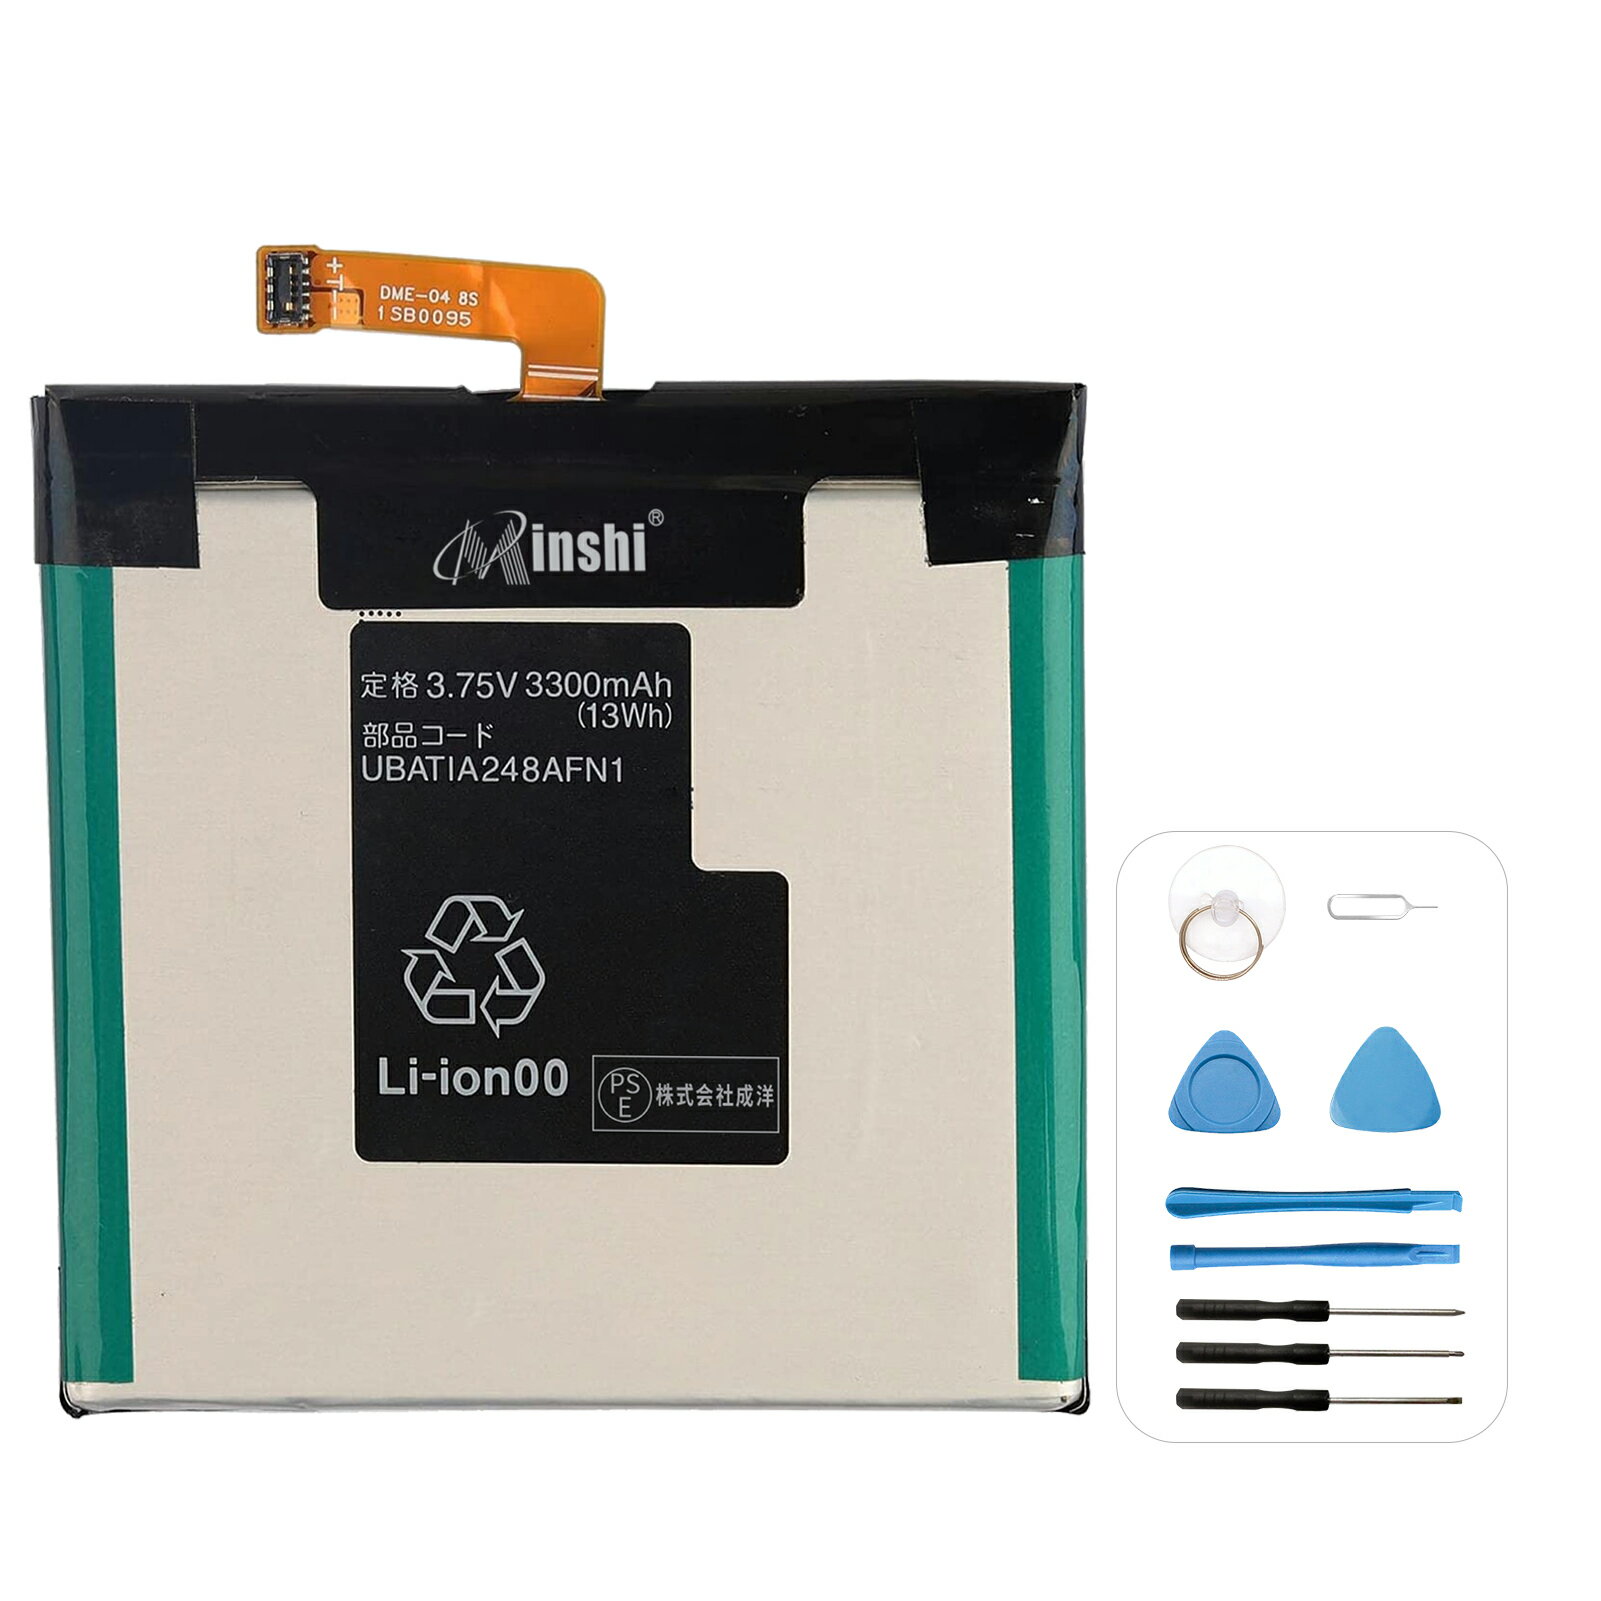 minshi 新品 AQUOS UBAT1A248AFN1 互換バッテリー 高品質交換用電池パック PSE認証 工具セット 1年間保証 3300mah